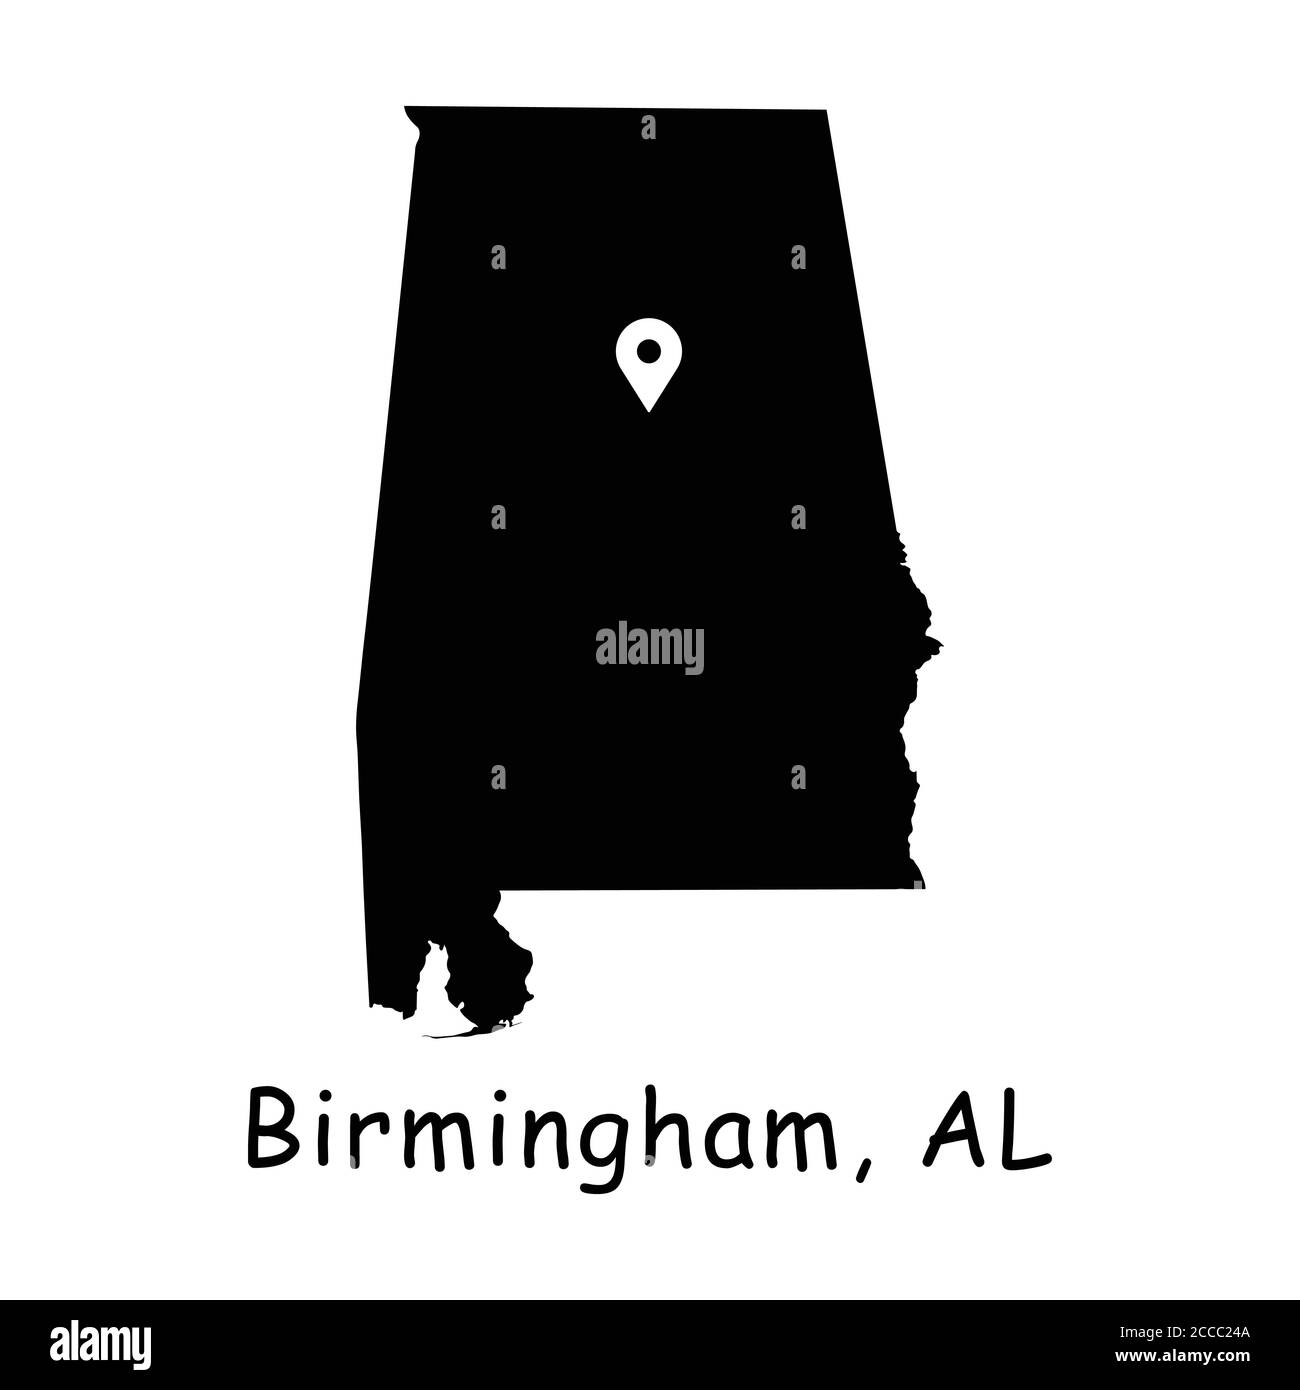 Birmingham sulla mappa statale dell'Alabama. Mappa dettagliata dello stato di al con pin sulla città di Birmingham. Mappa vettoriale silhouette nera isolata su sfondo bianco. Illustrazione Vettoriale